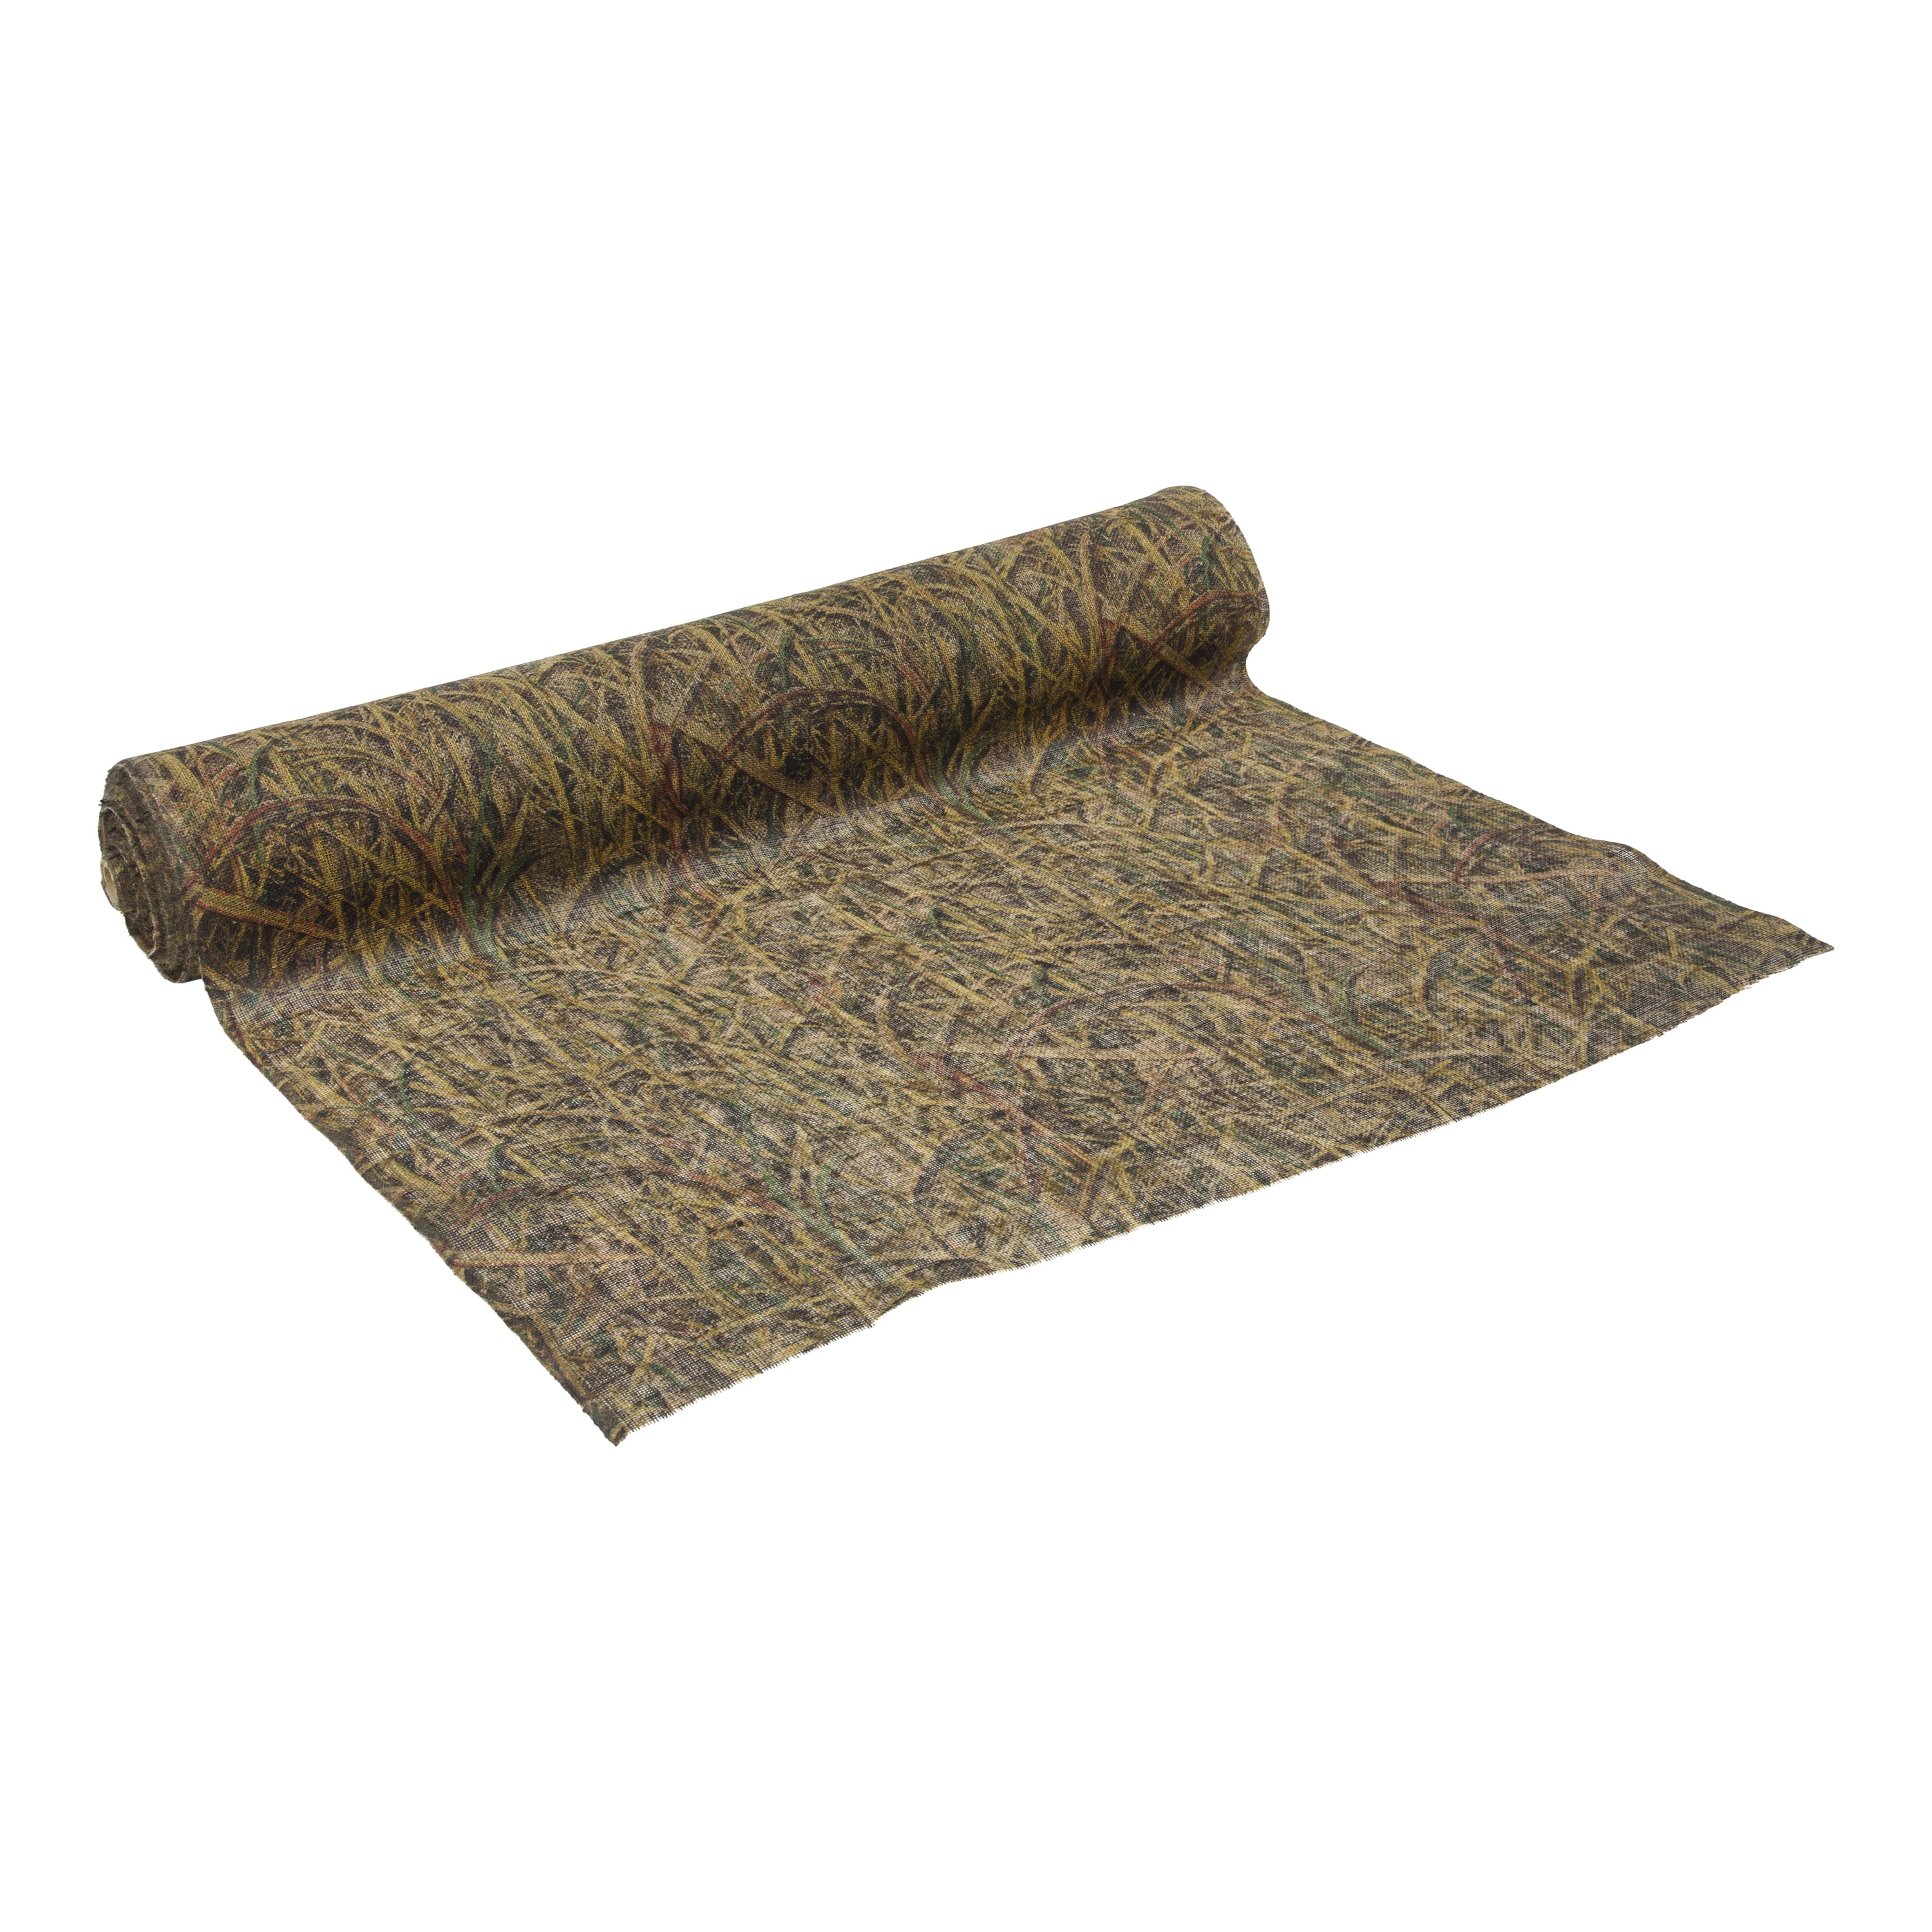 How to make a camo grass mat 